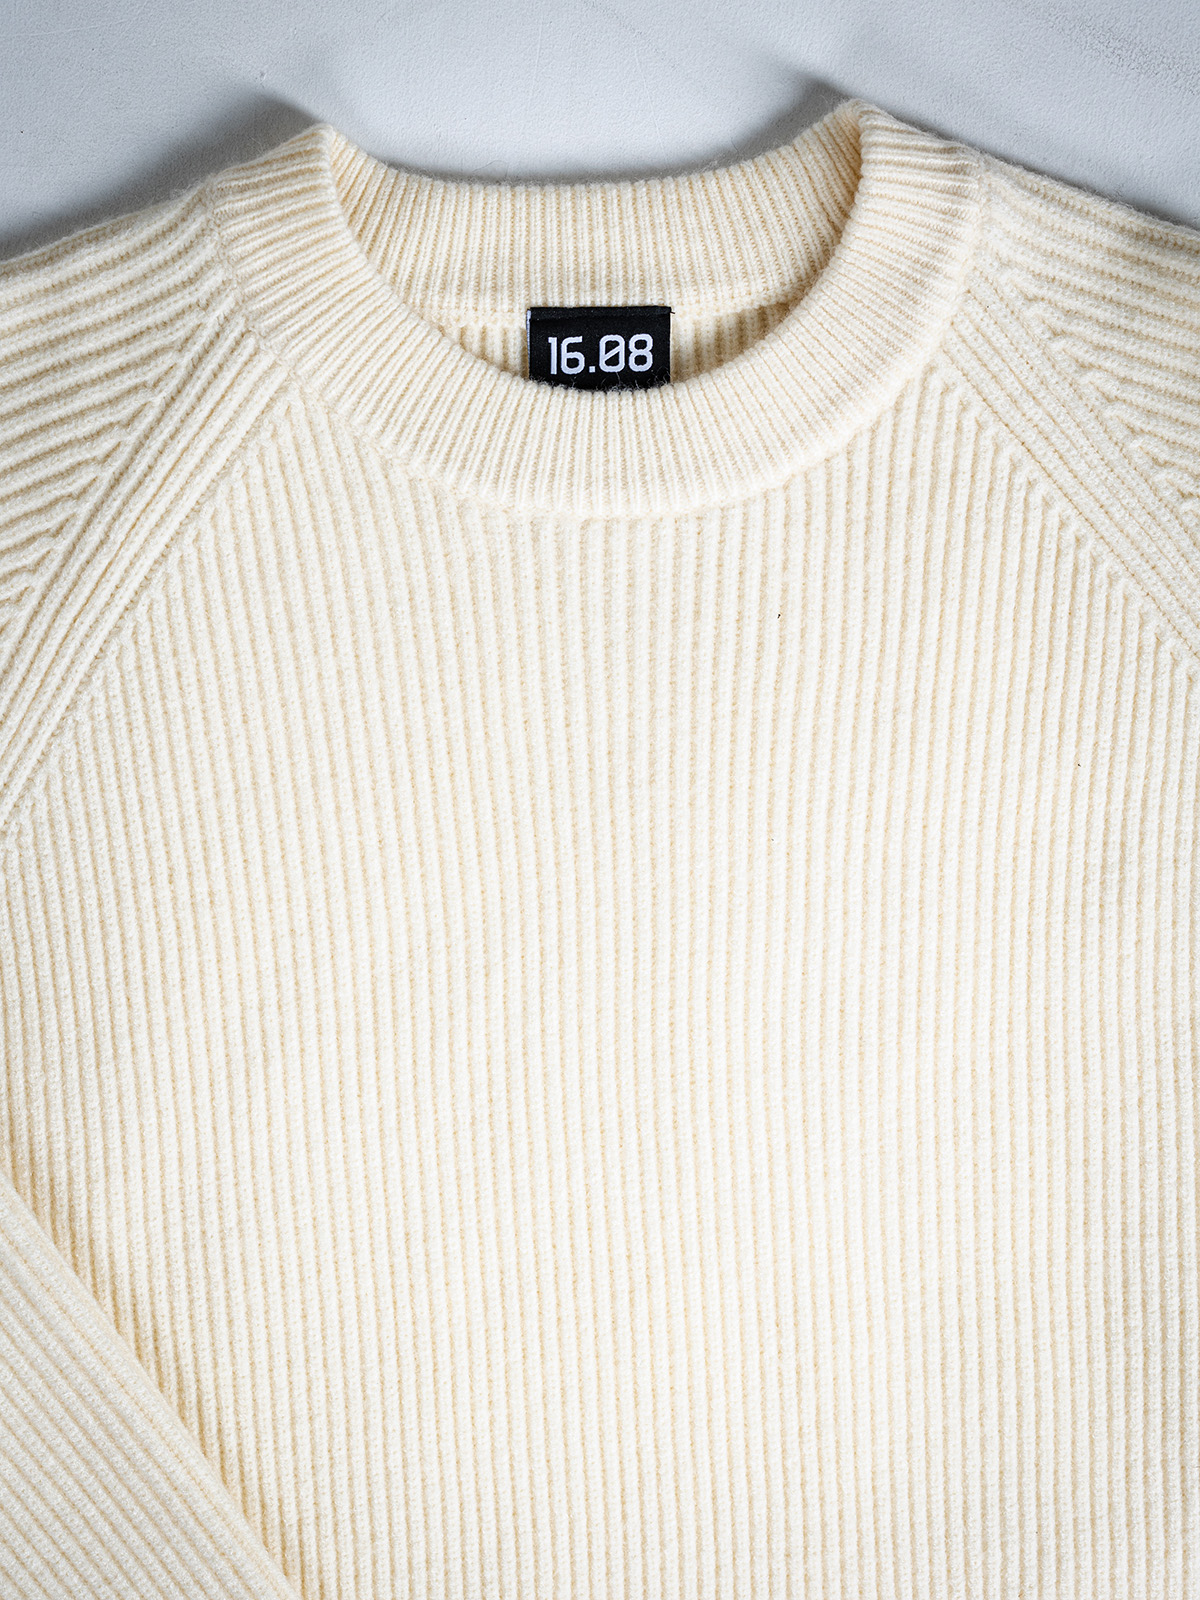 Offwhite Oversized Sweater 1608 WEAR